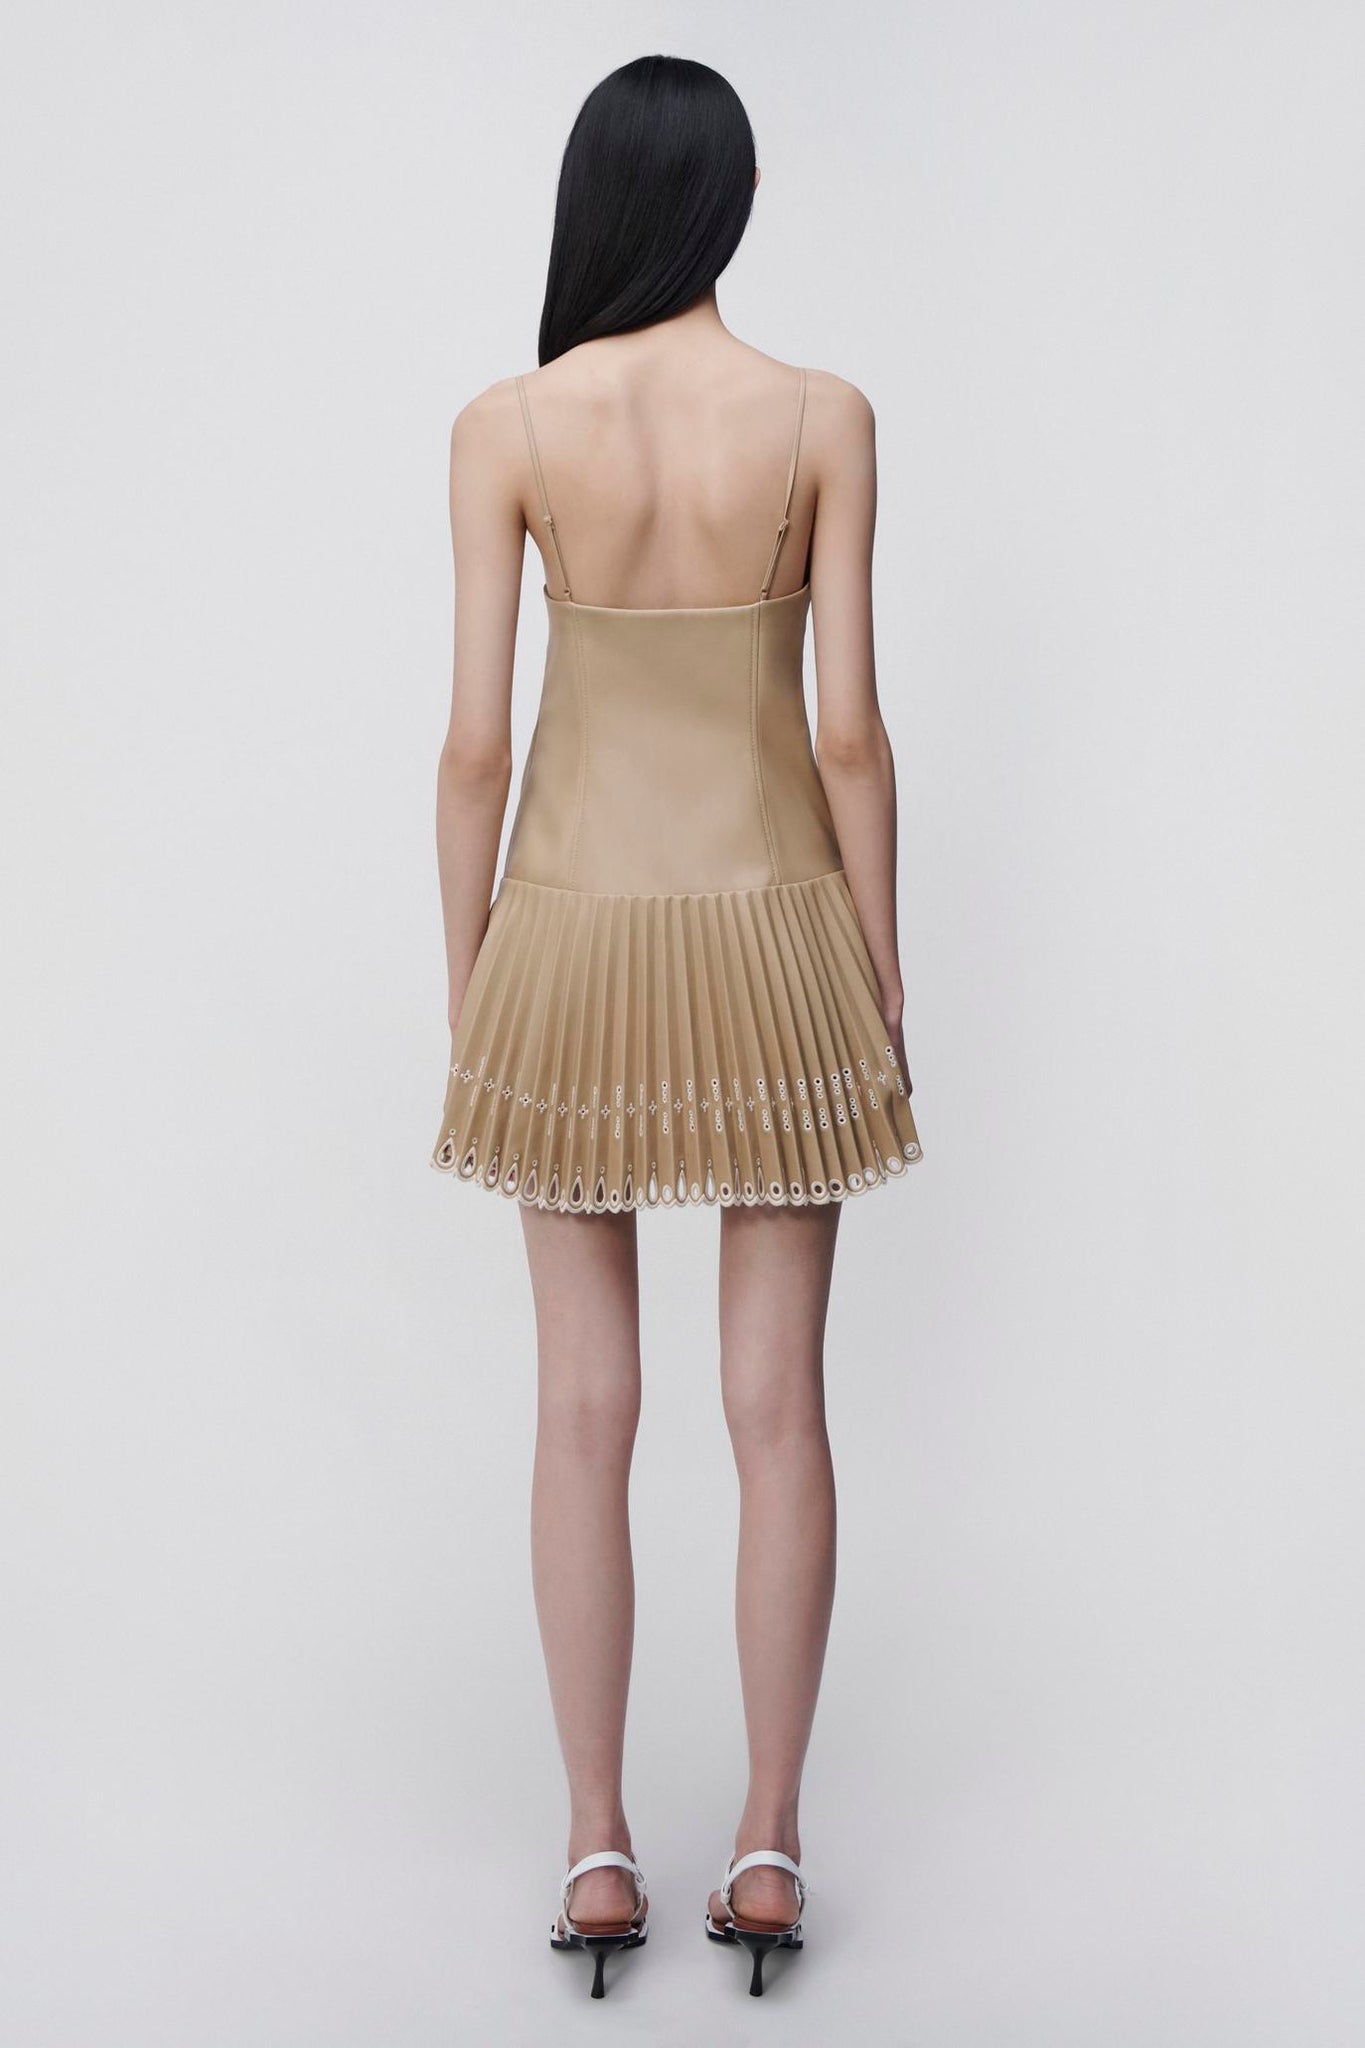 Jerri Vegan Leather Mini Dress - SIMKHAI 